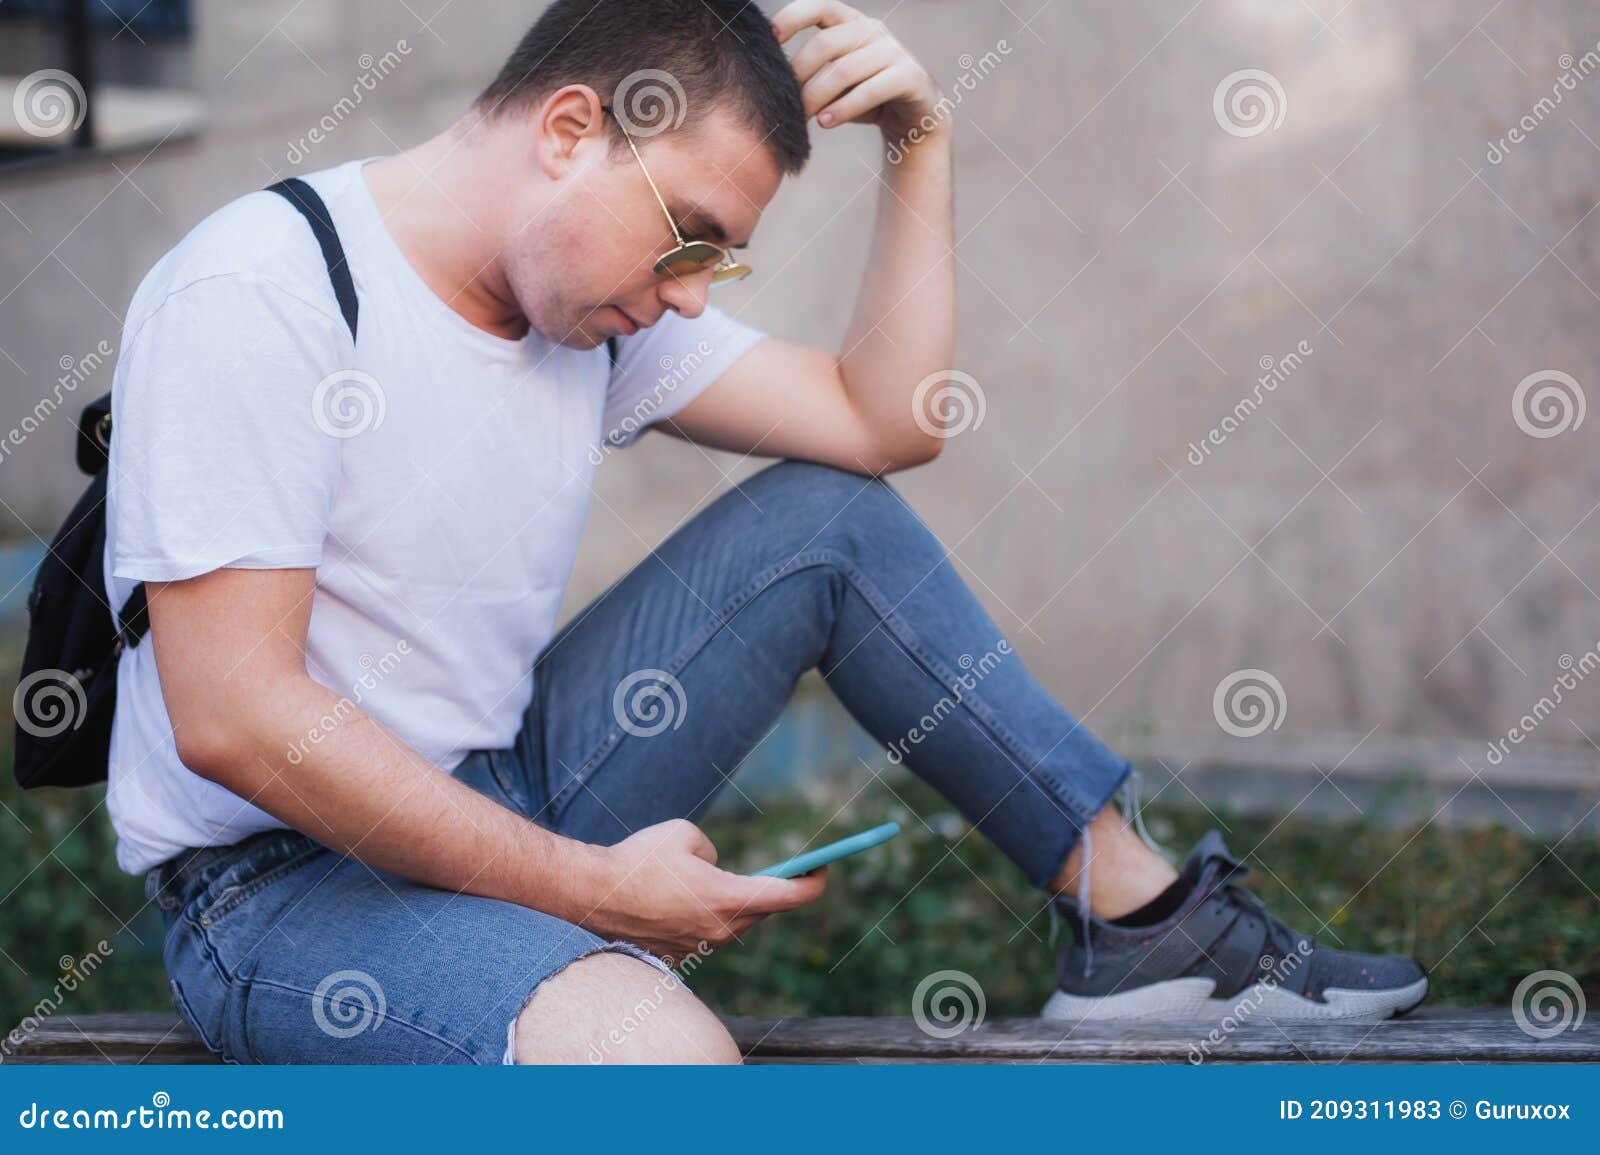 man using smart phone connect communication. emotional isolation, technology depresion